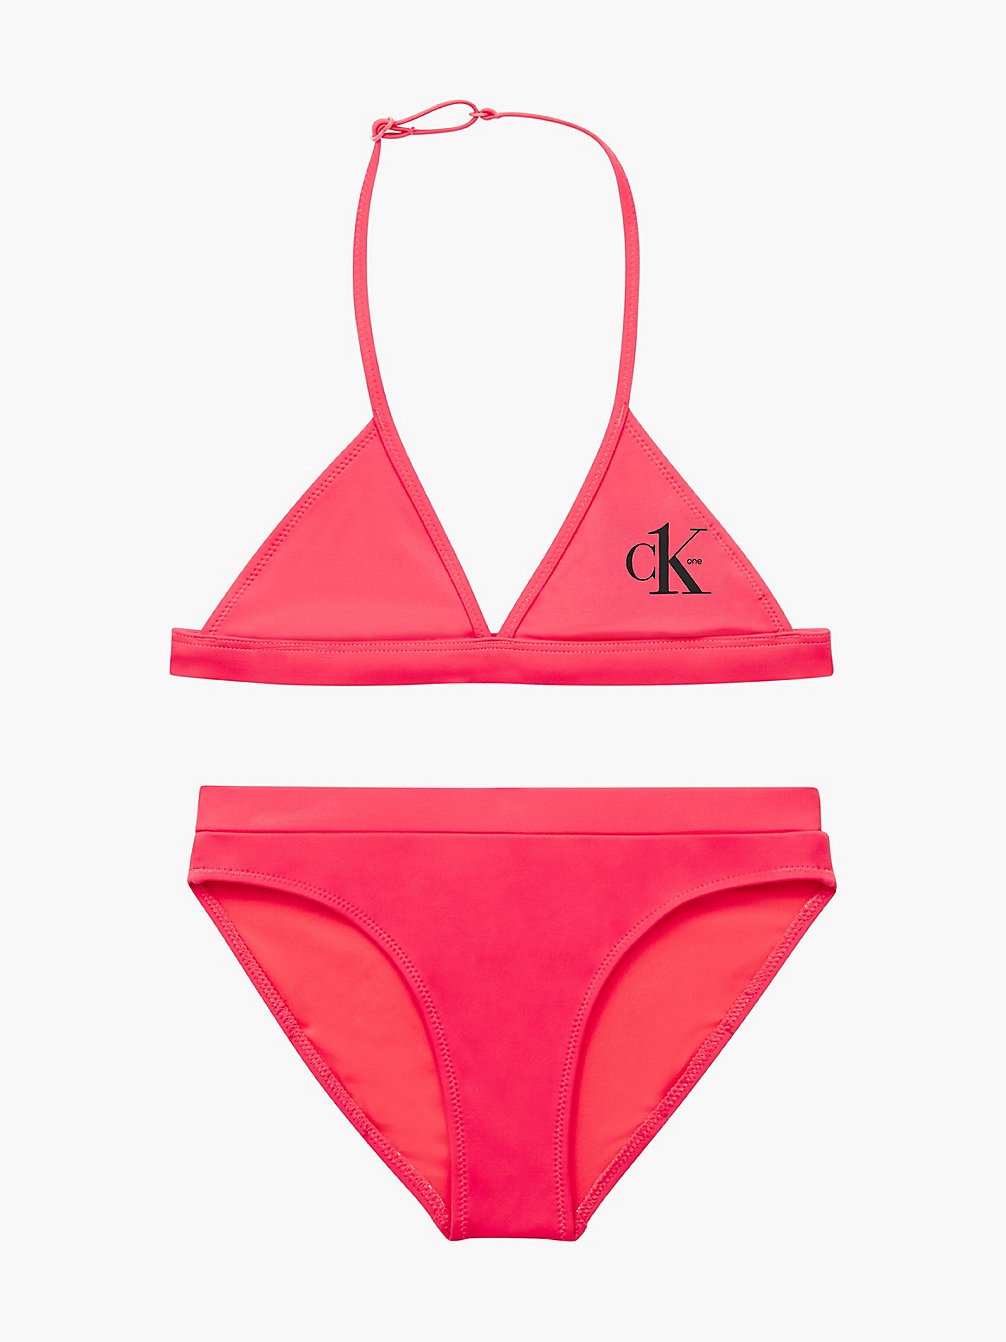 CORAL CRUSH Bikini-Set Mit Triangel-Top Für Mädchen - CK One undefined Maedchen Calvin Klein